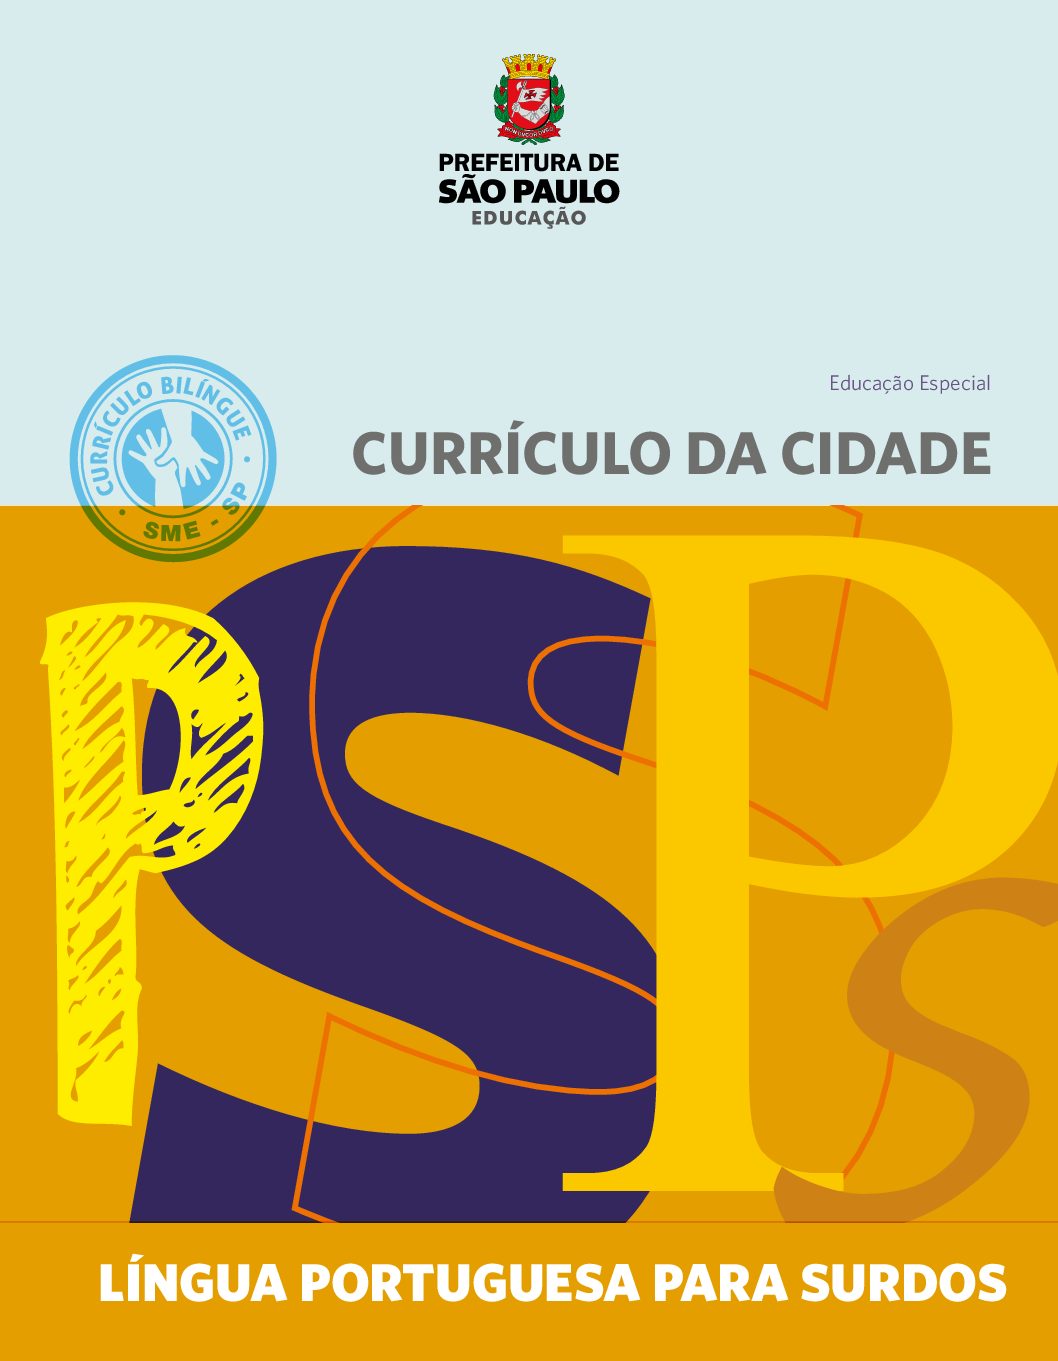 Currículo da Cidade para Educação Especial: componente curricular Língua Portuguesa para Surdos.